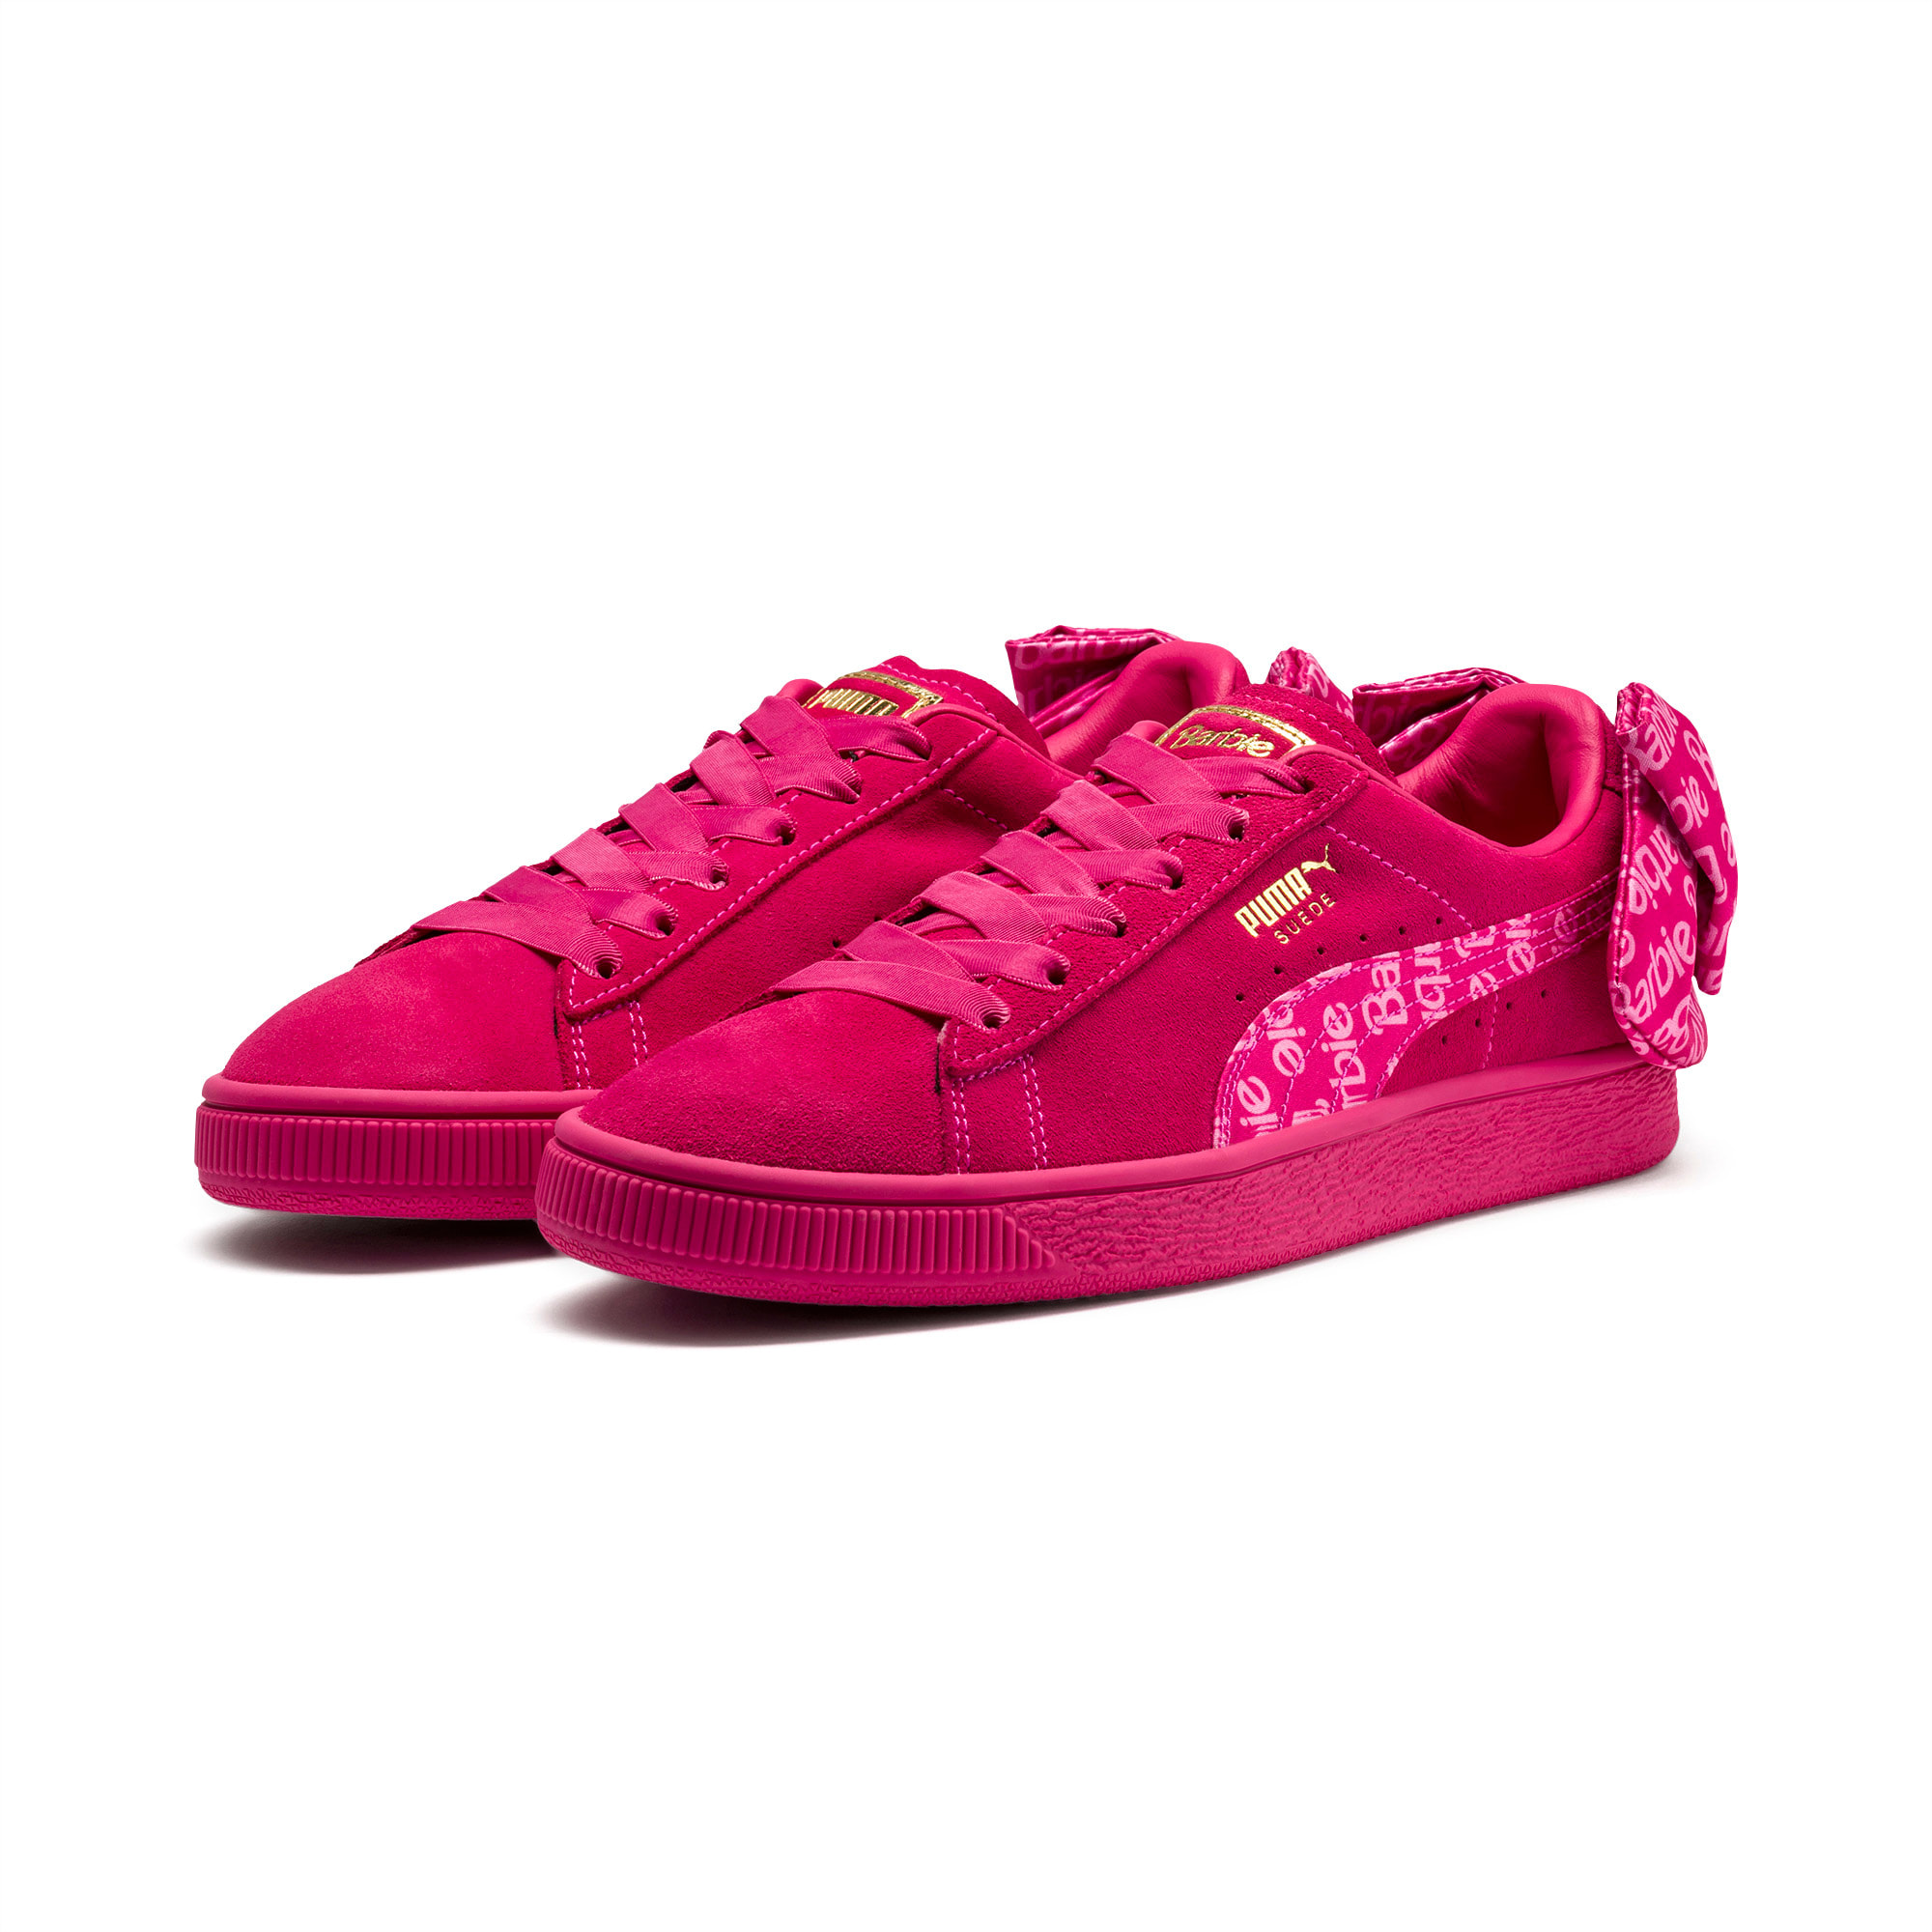 barbie shoes puma